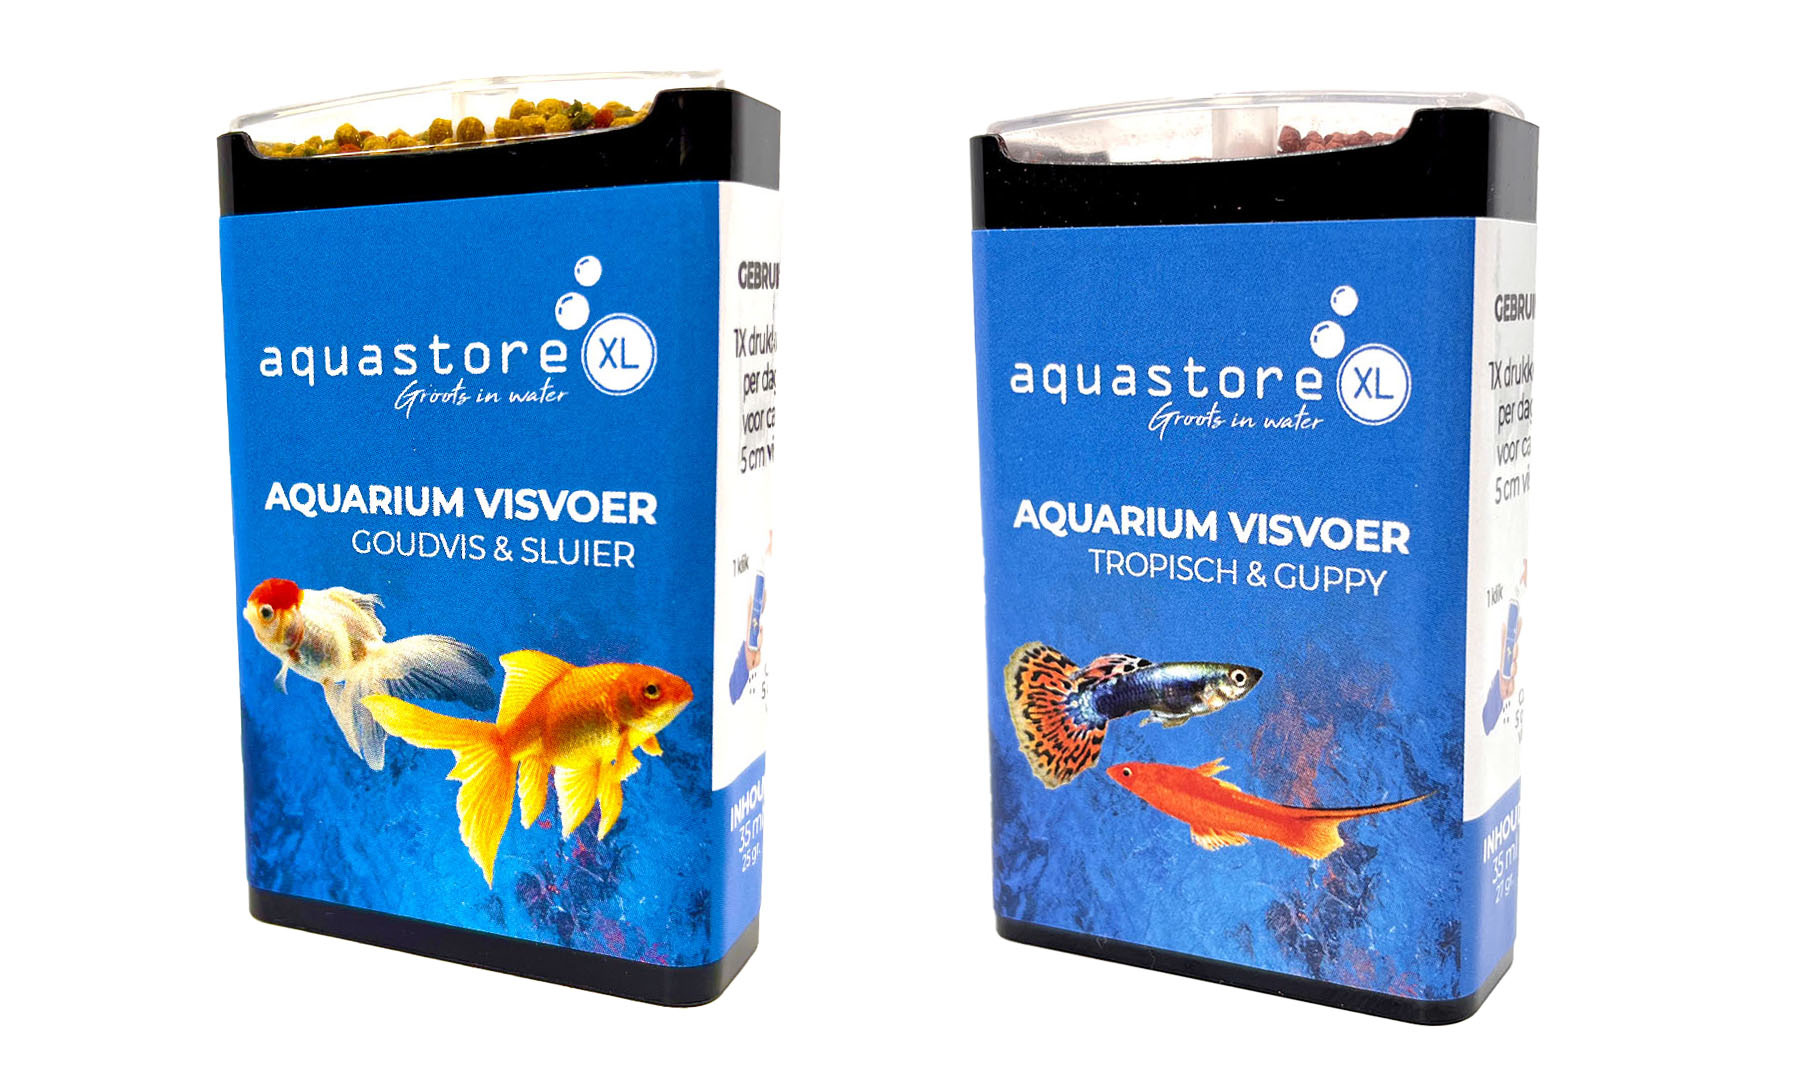 Goudvis & Sluier + Tropisch & Dispenser AquastoreXL